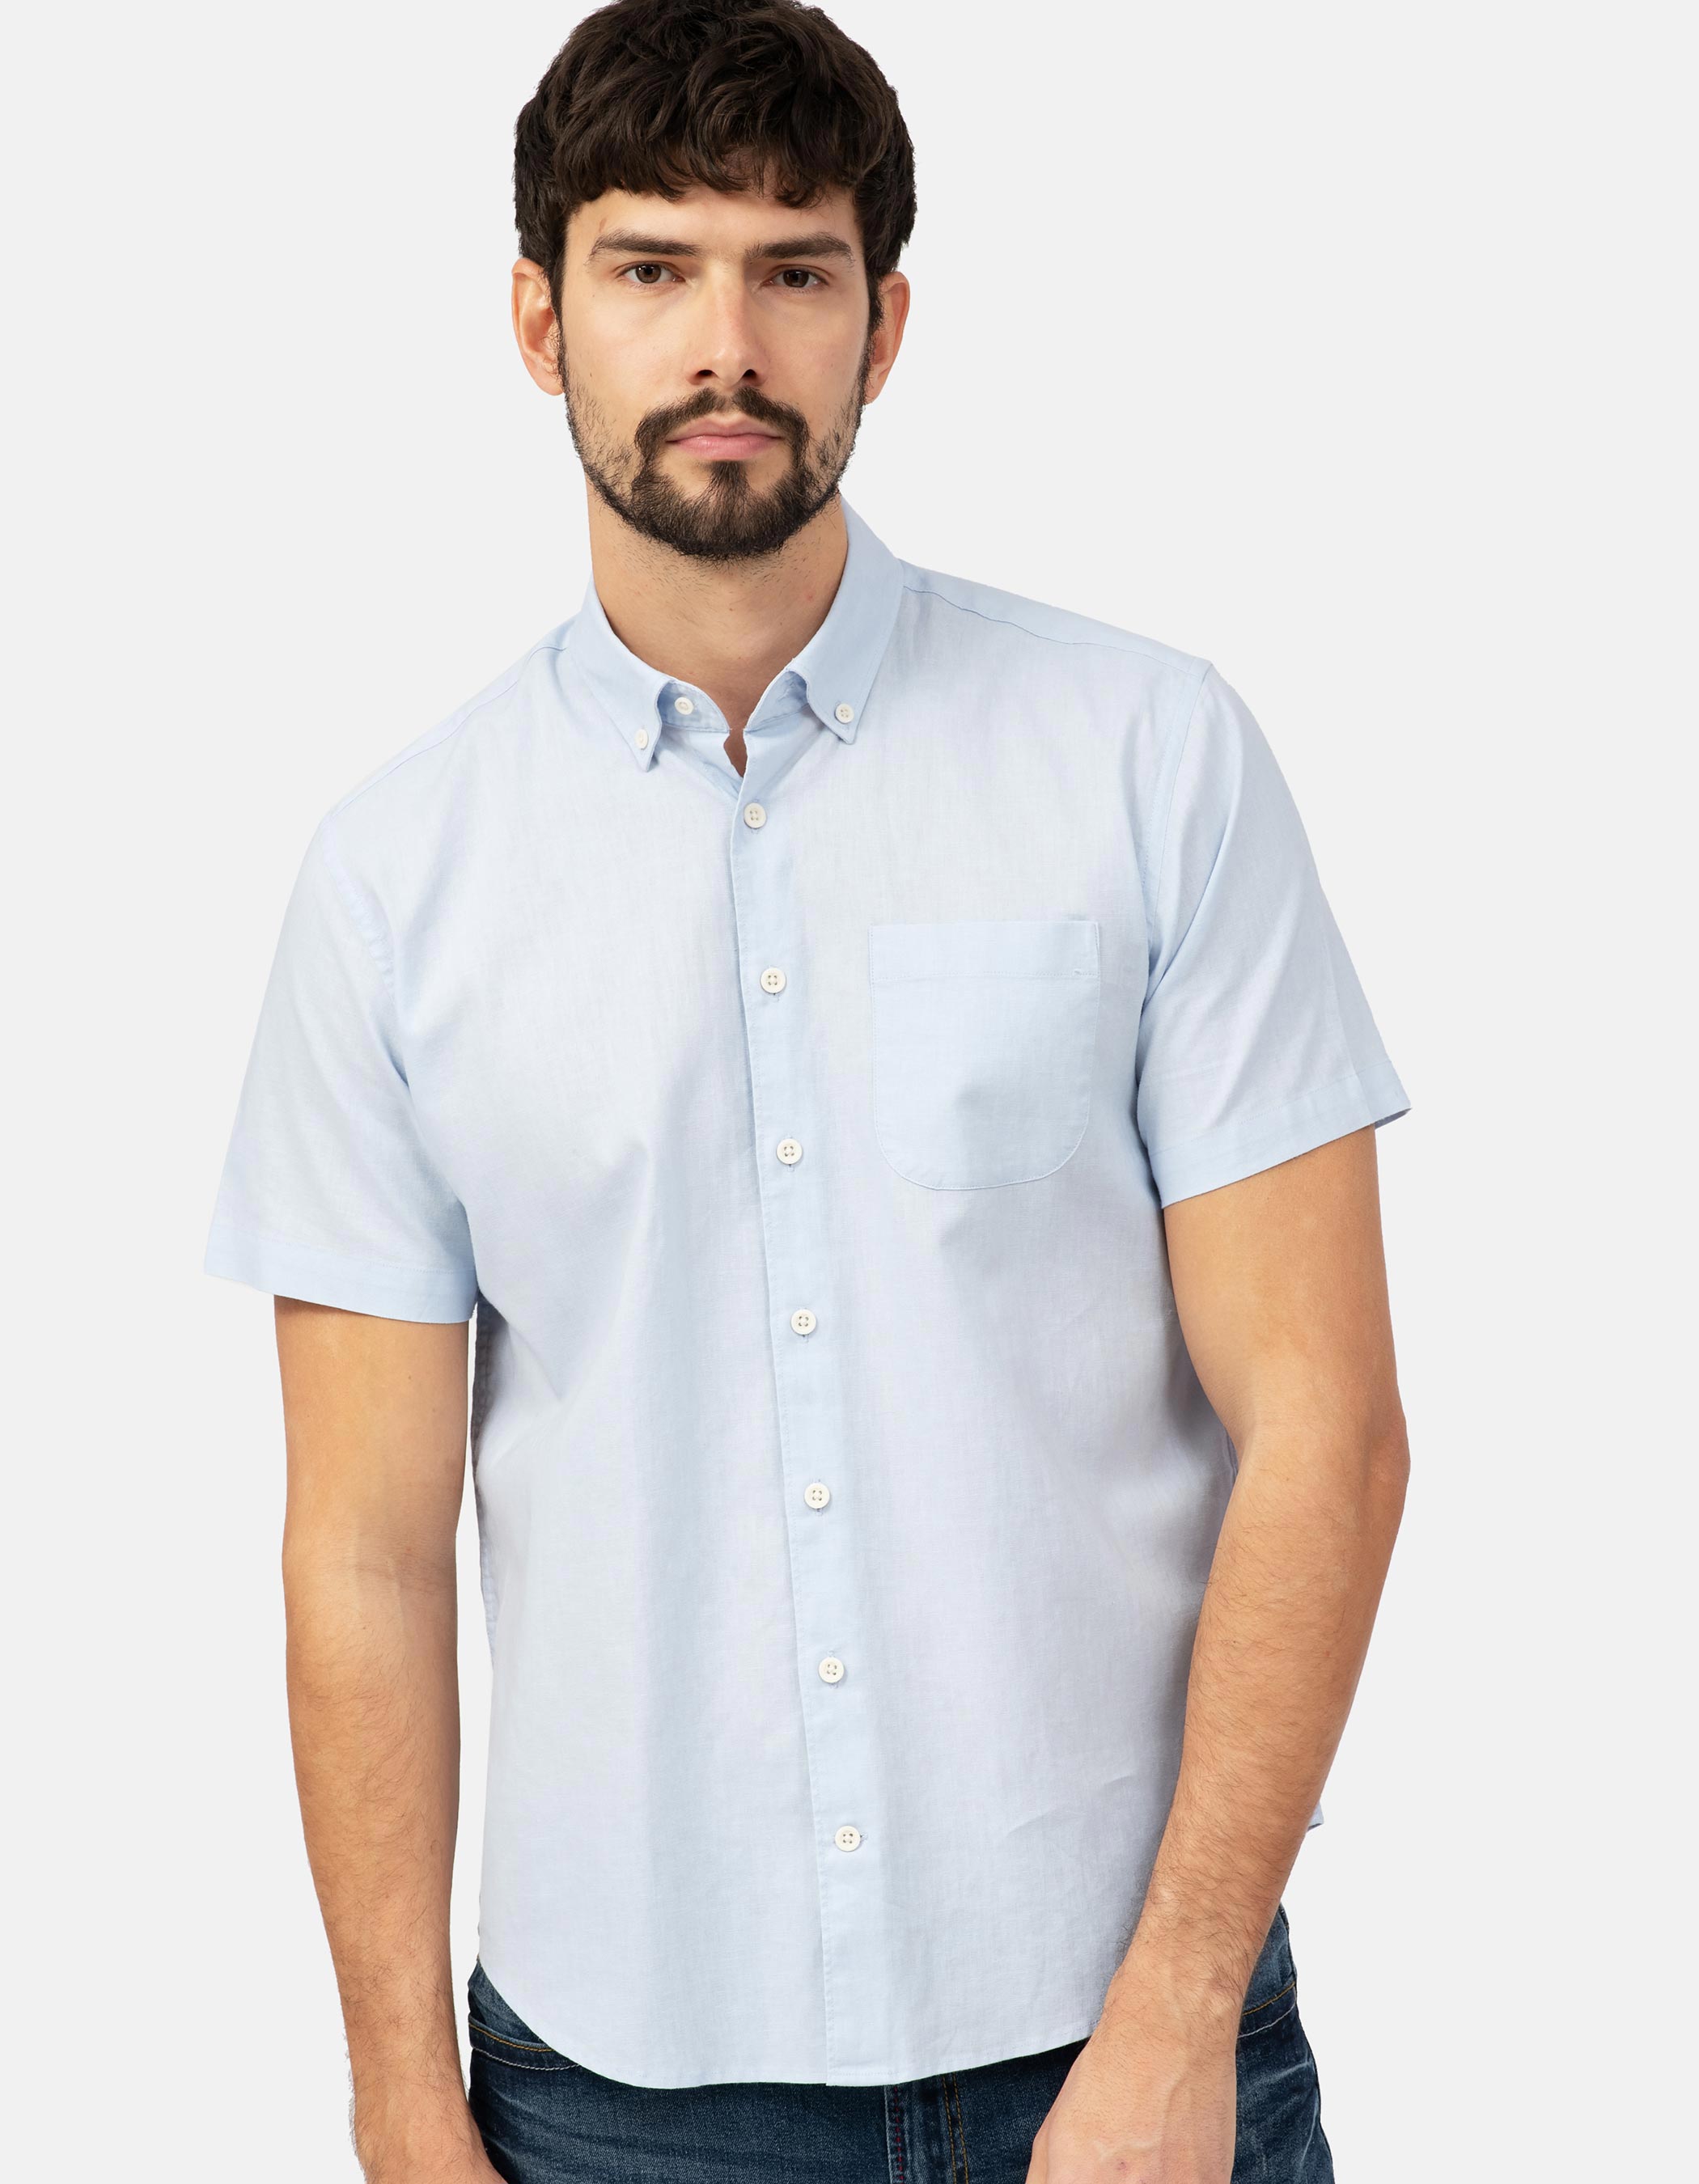 Linen and cotton short sleeve shirt. 4